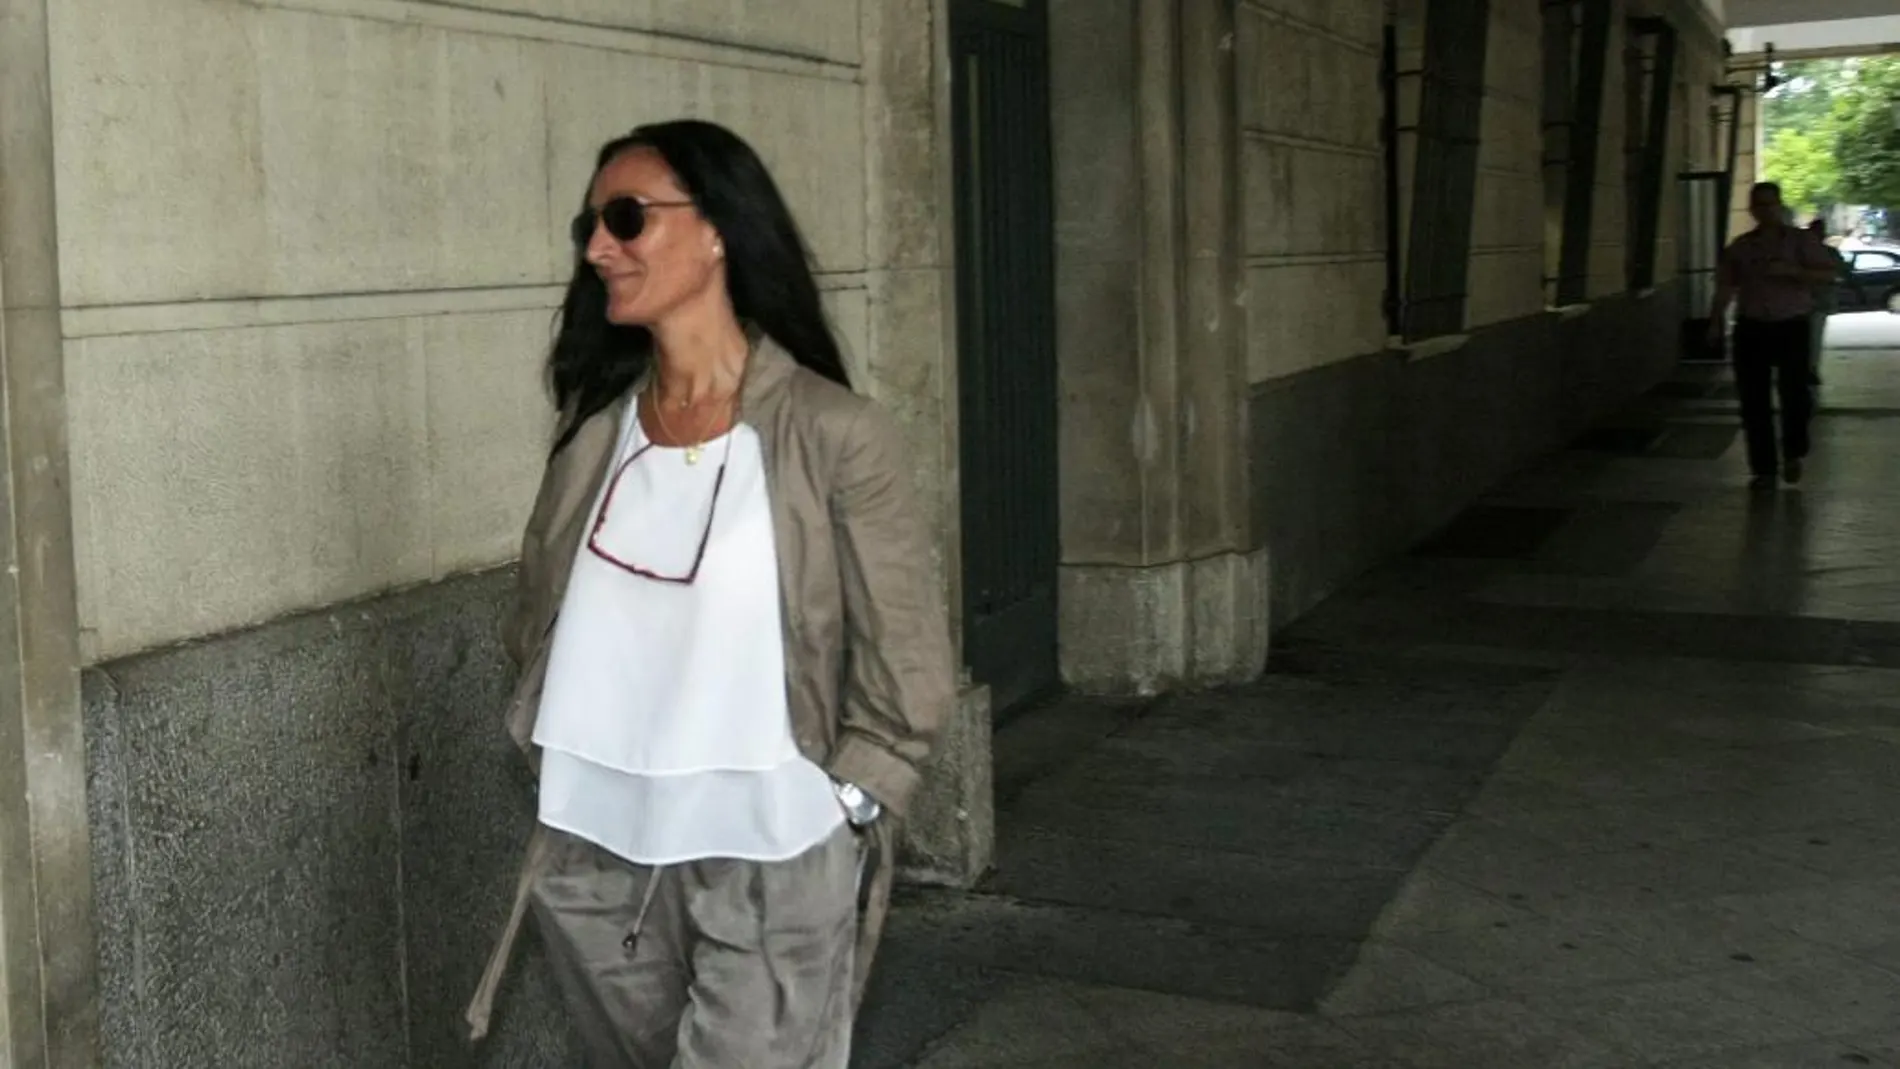 La jueza María Núñez elevó el proceso al tribunal provincial la semana pasada